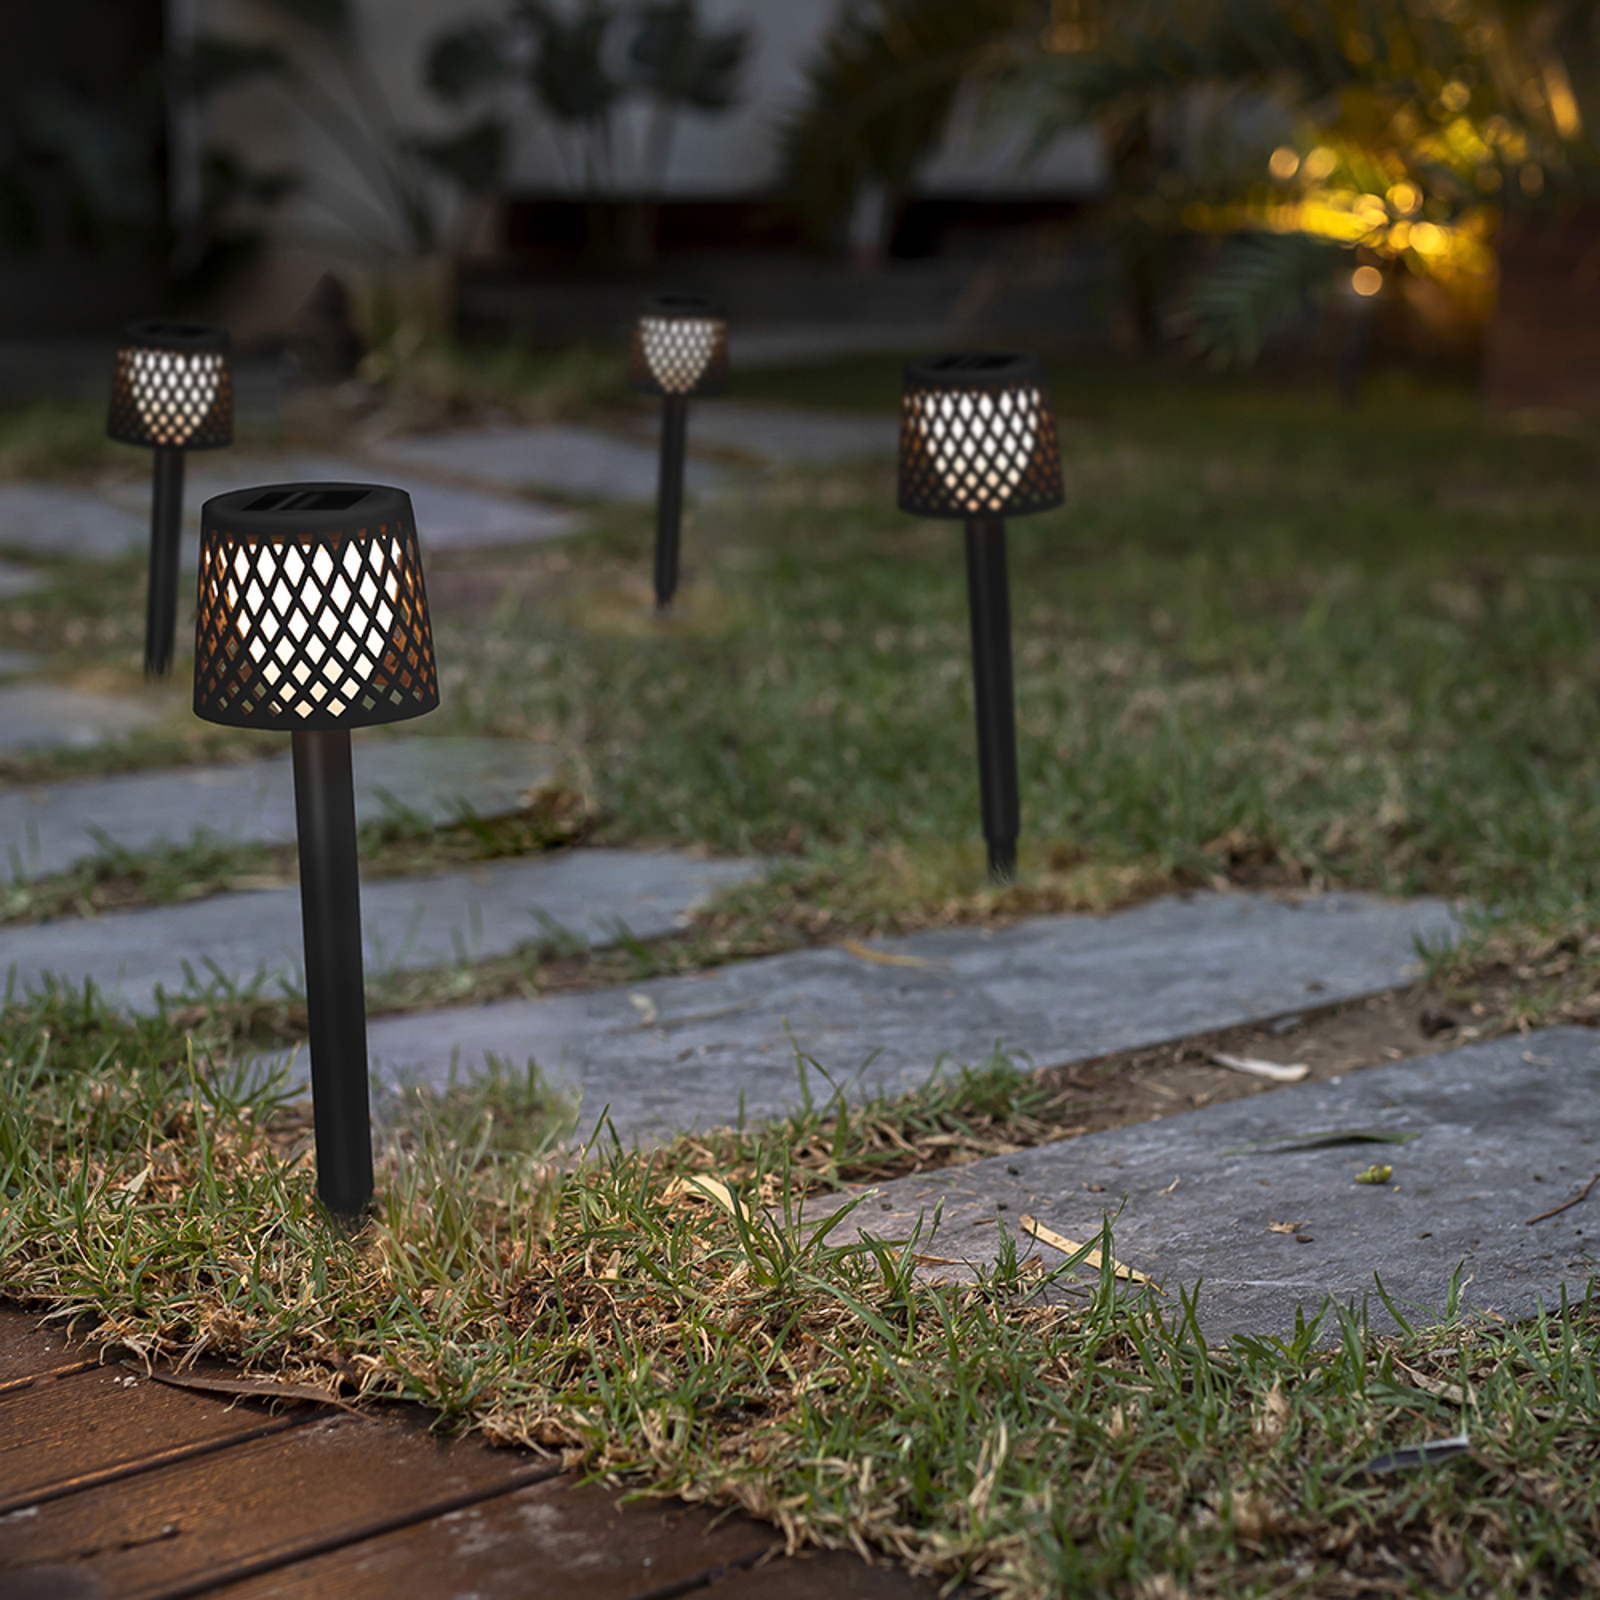 Newgarden LED napelemes lámpa Gretita, fekete, földi tüske, 4 db